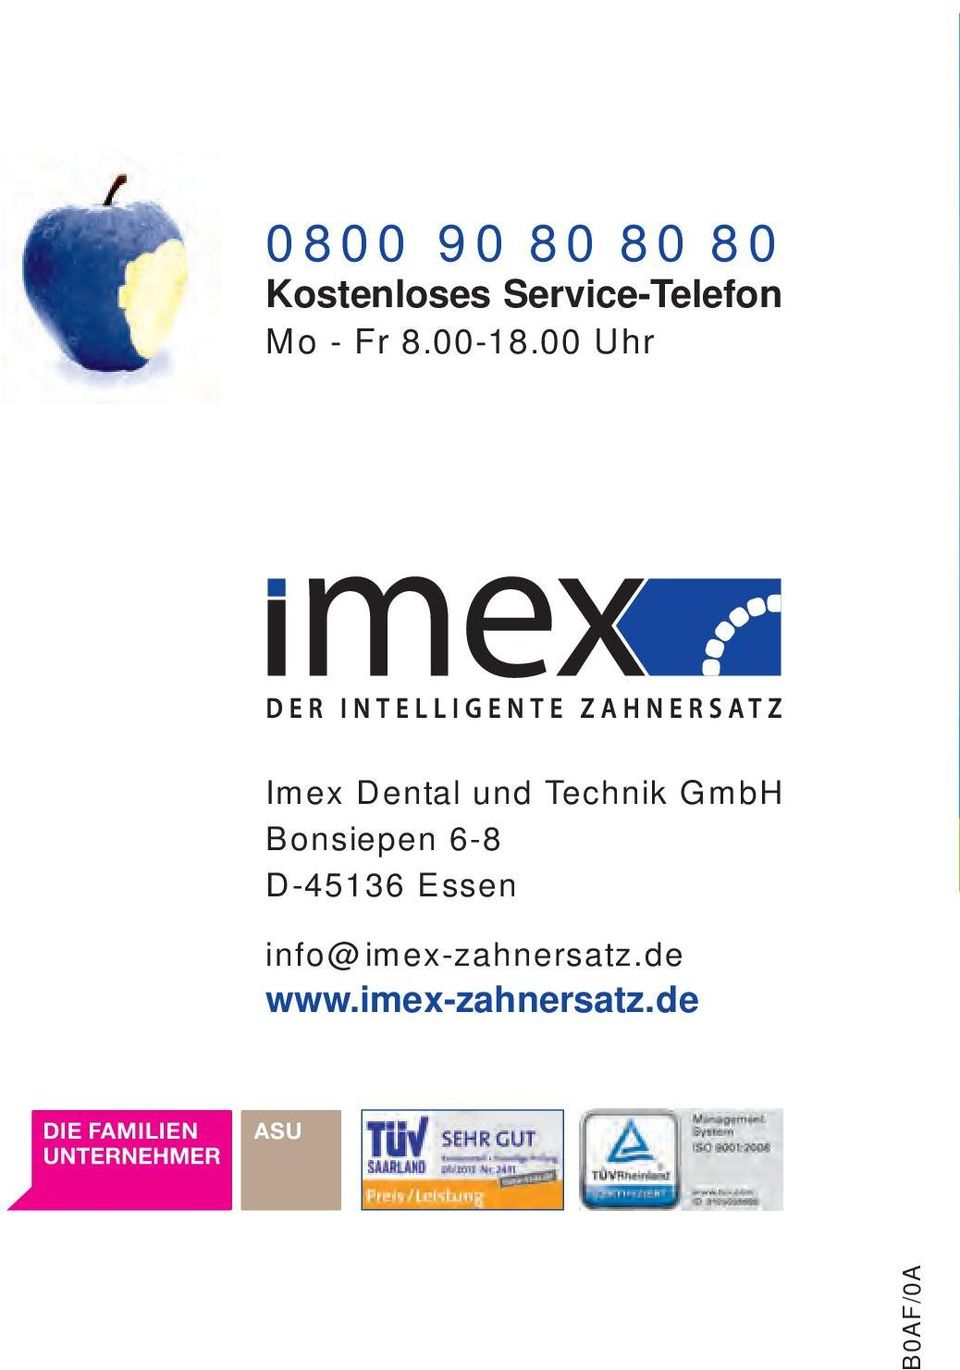 00 Uhr Imex Dental und Technik GmbH